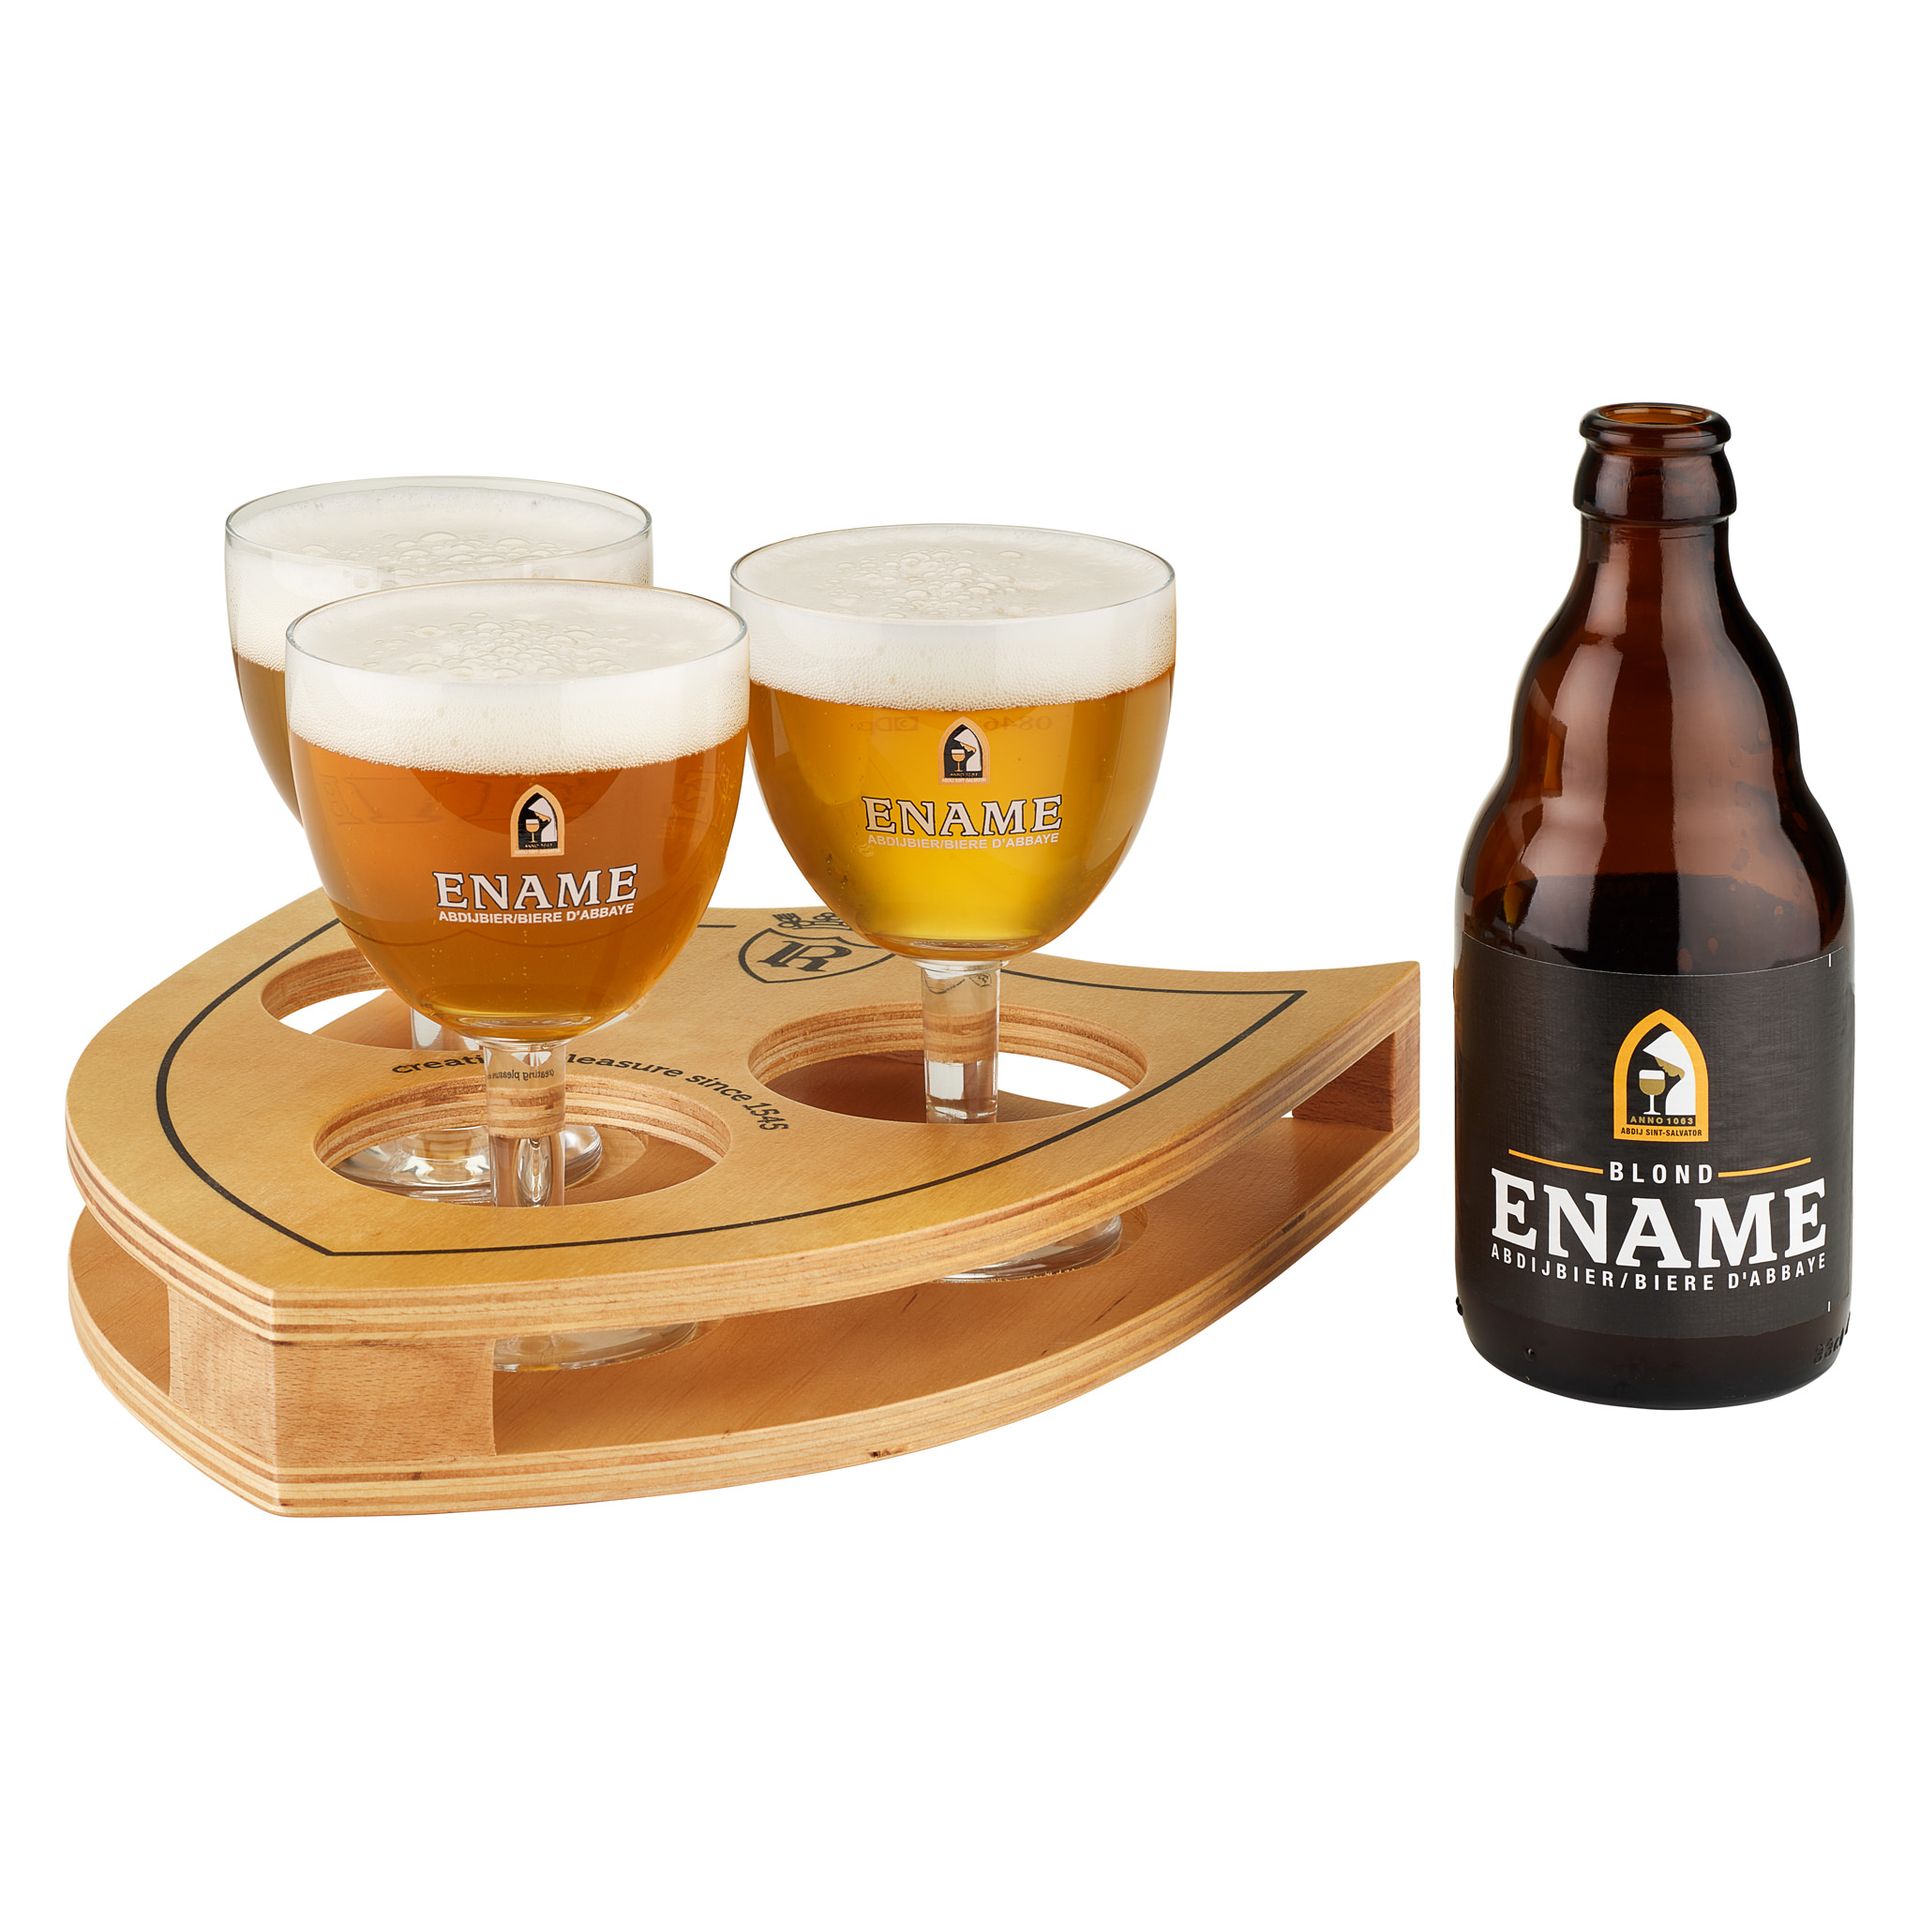 Ename blond bier brouwerij Roman productfoto